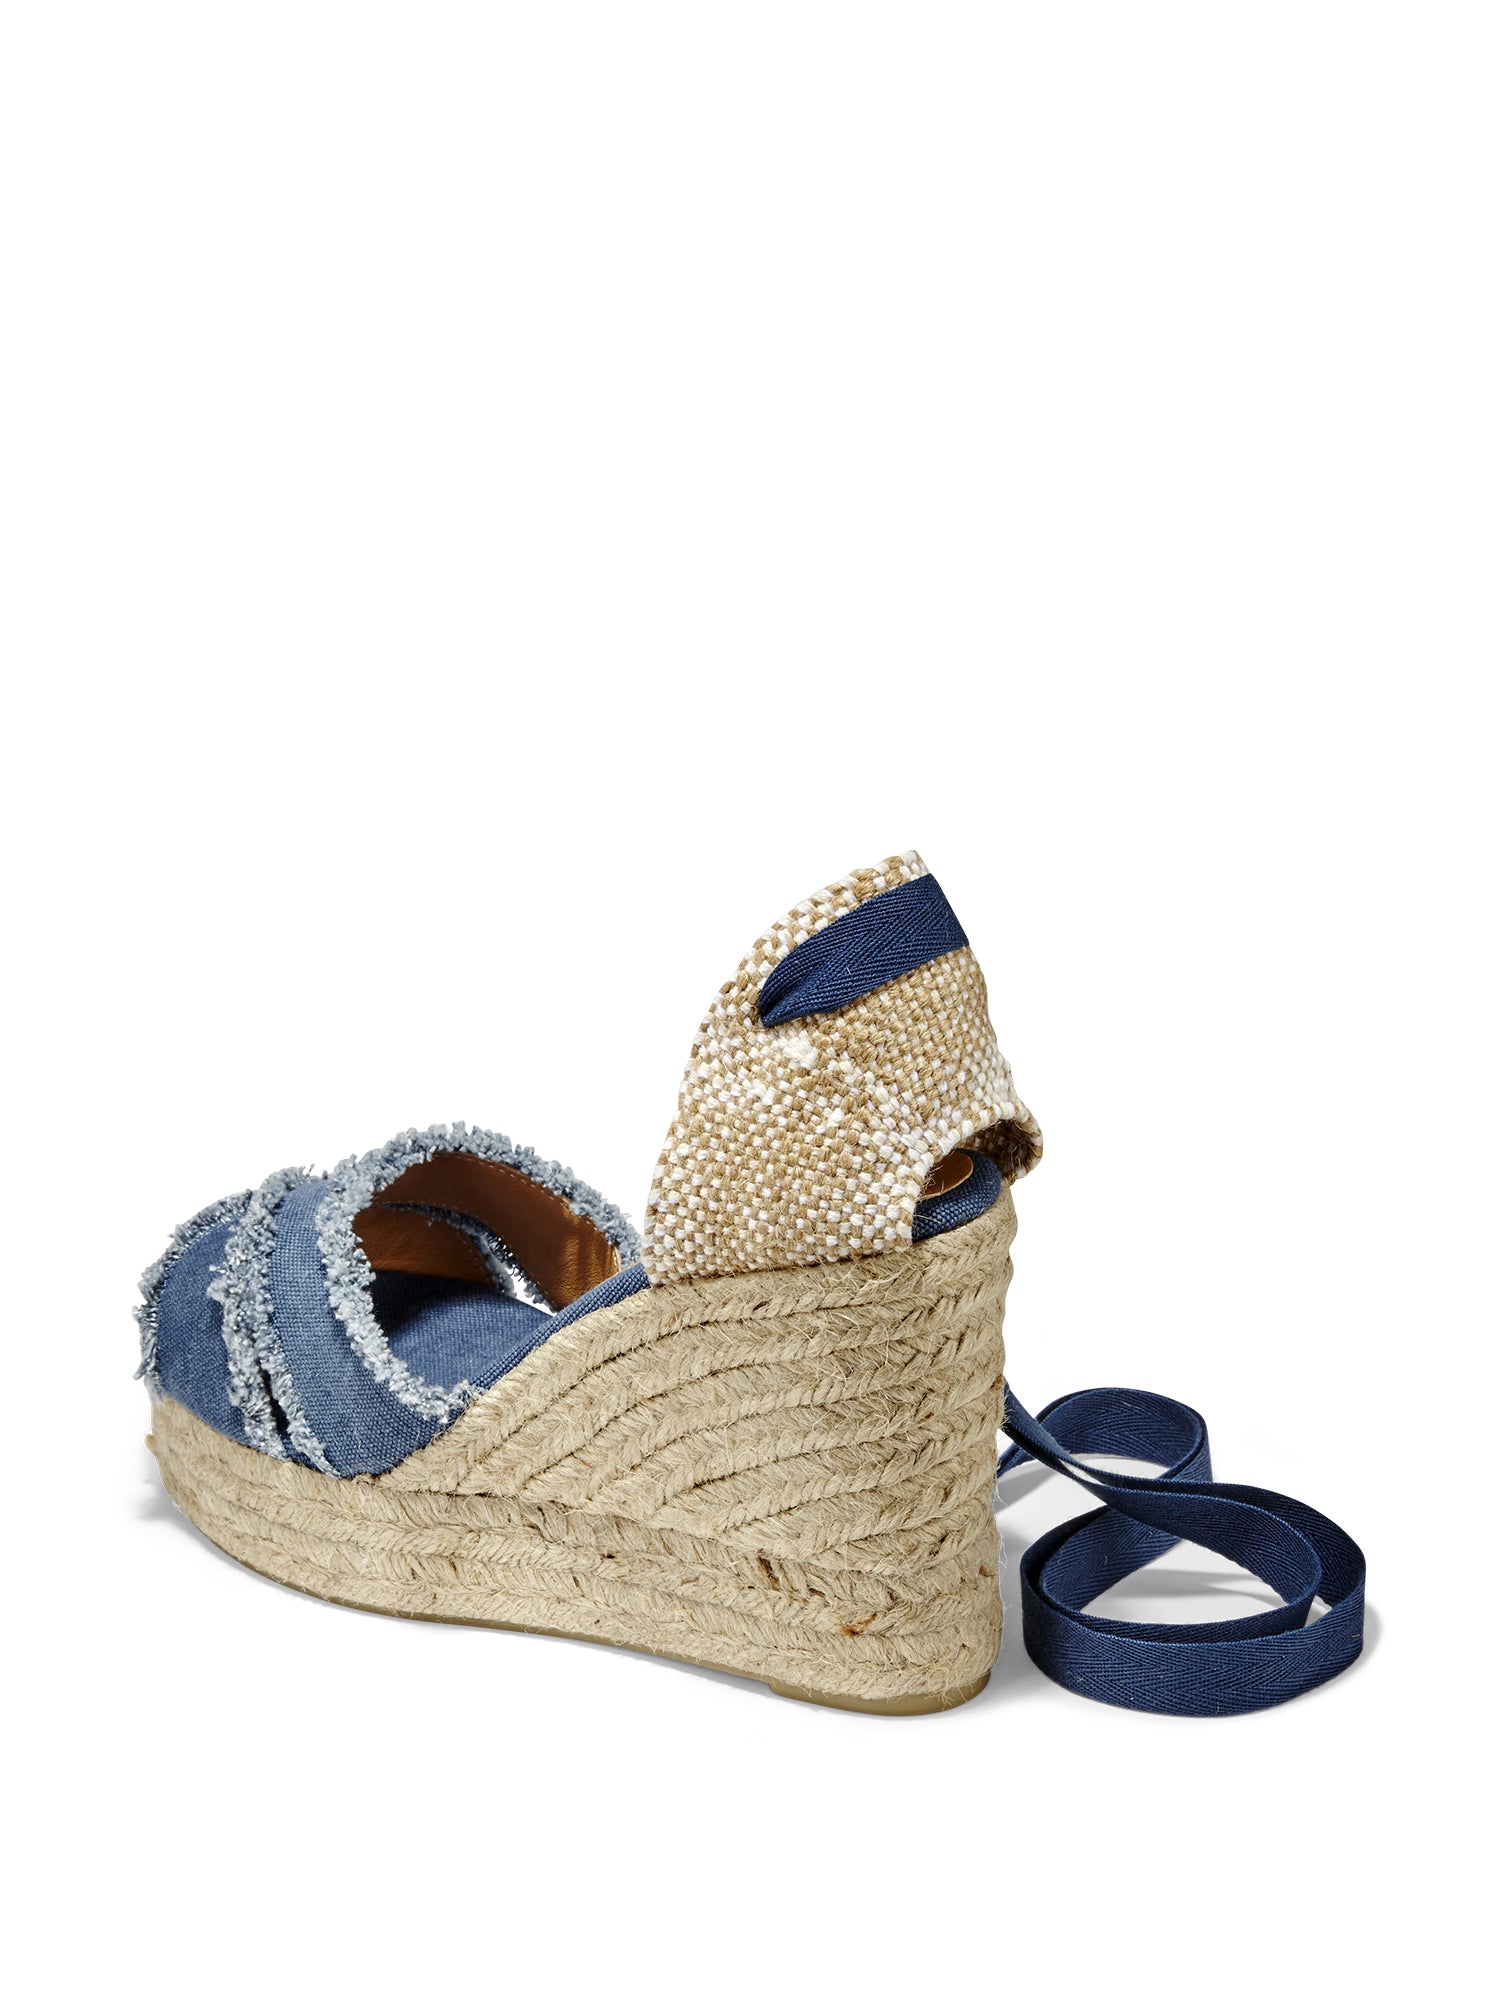 Women's Blue Denim Strap Espadrille Platform Sandals - Size 6